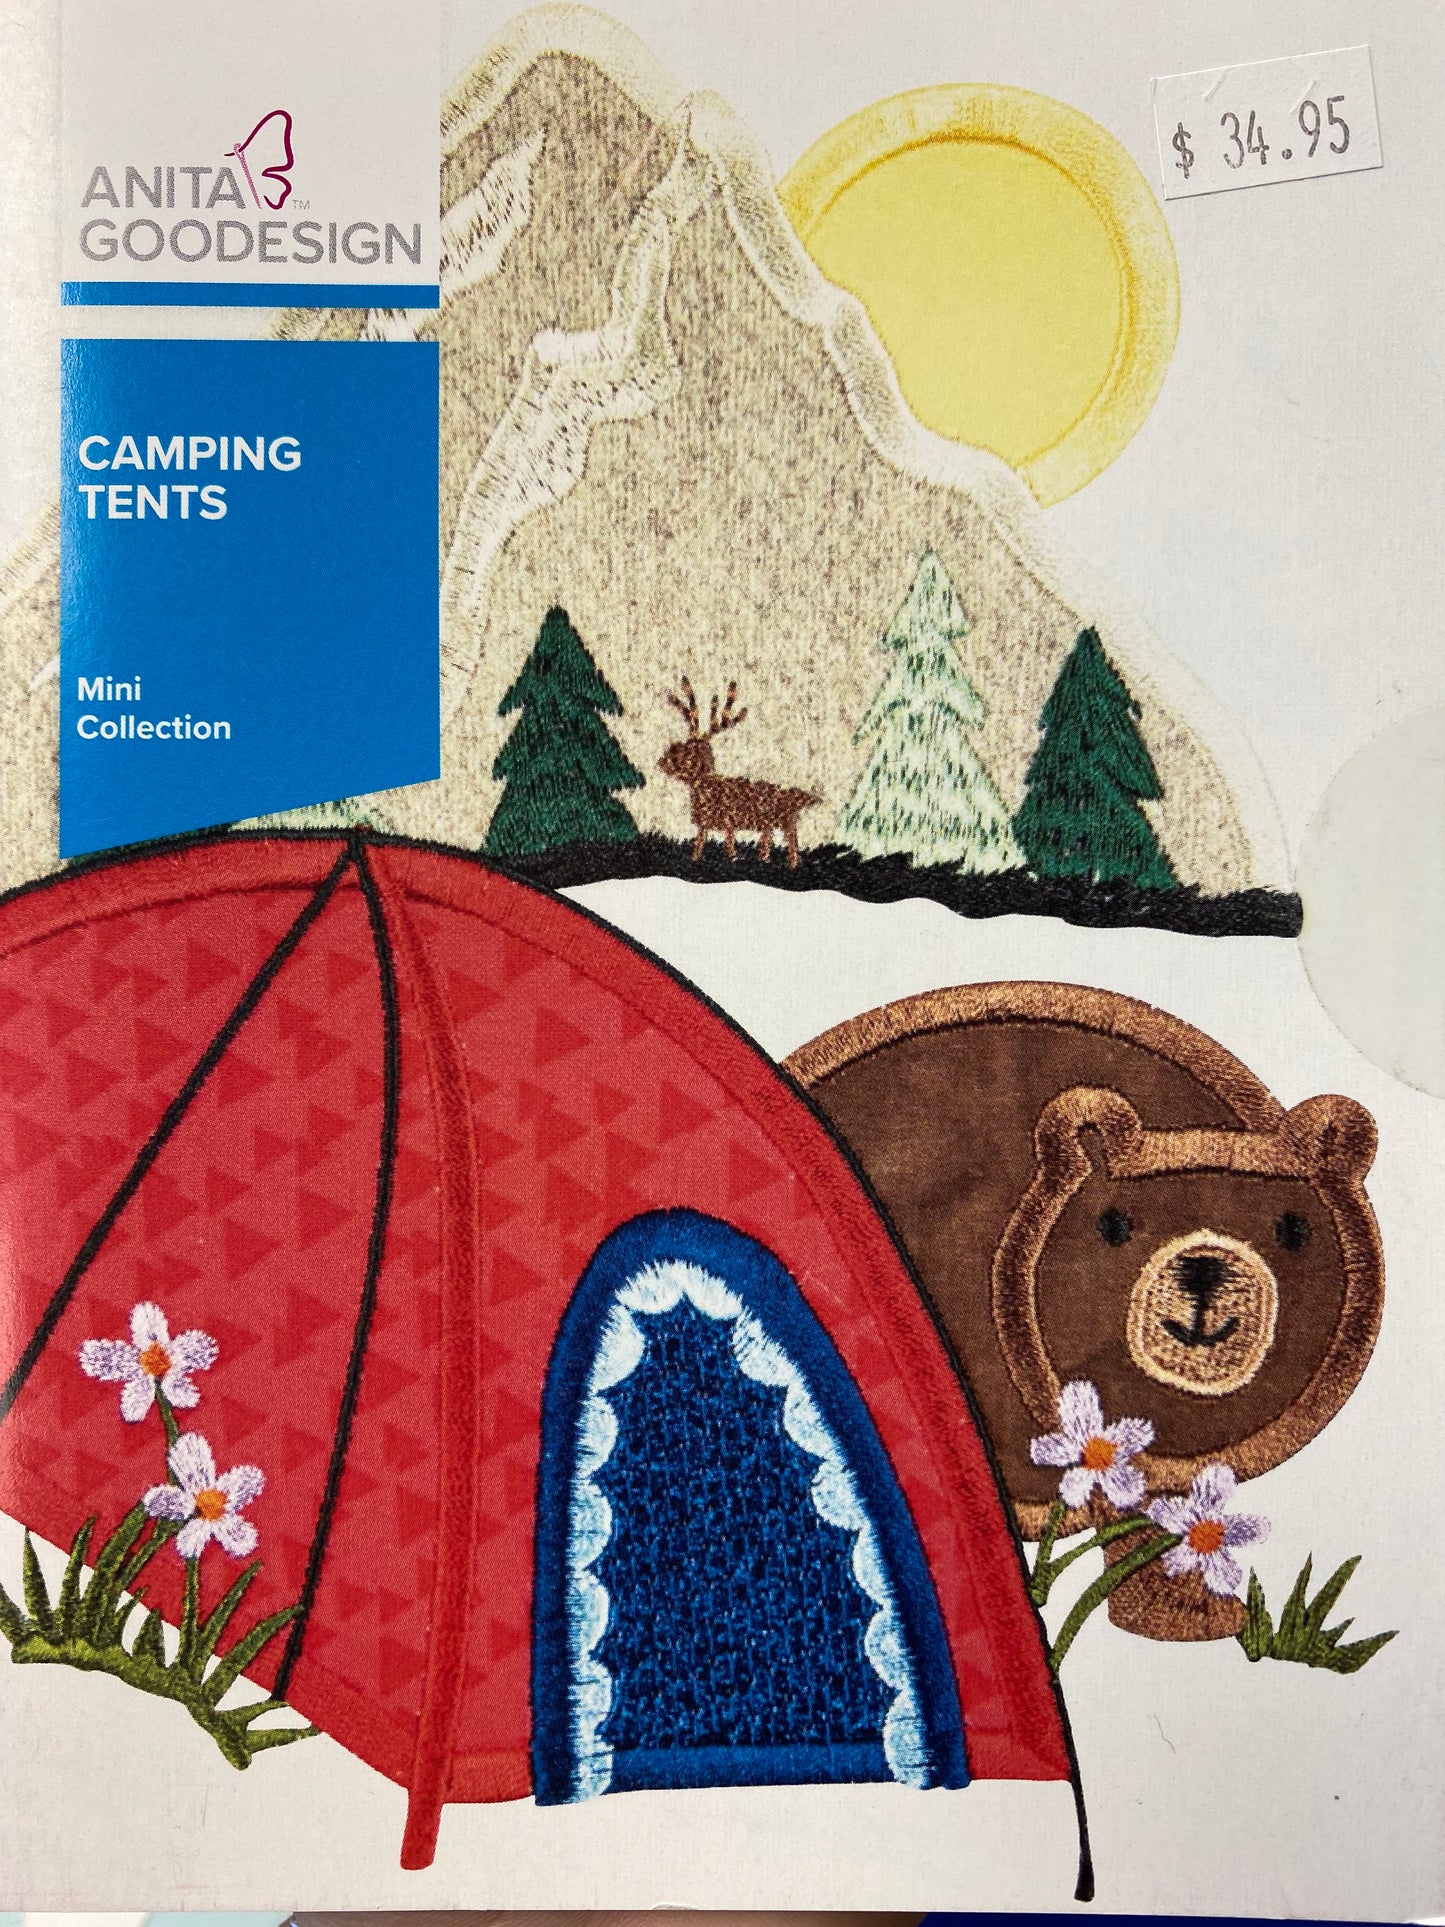 Camping Tents by Anita Goodesign